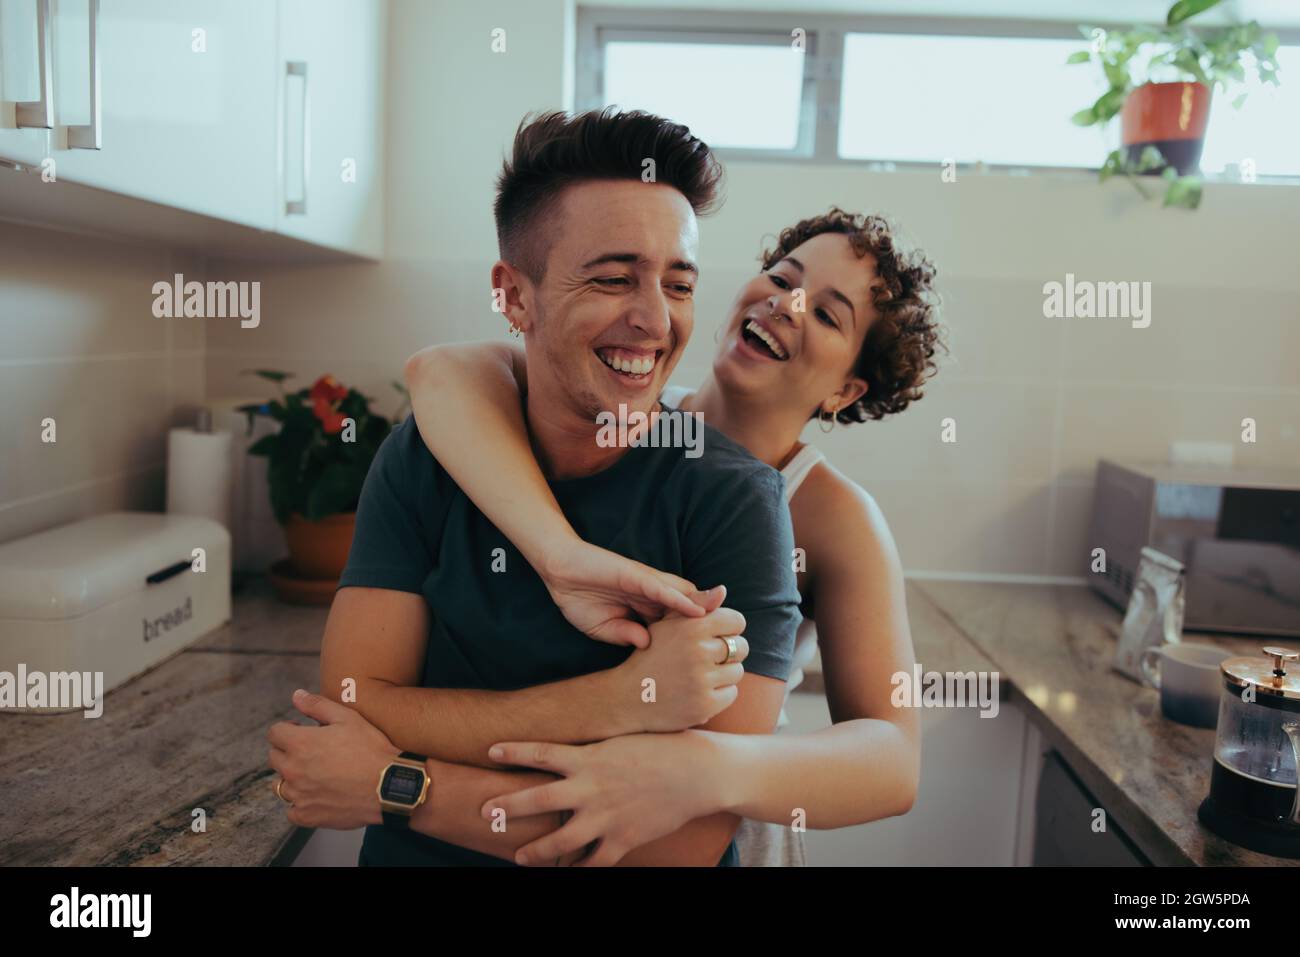 Romantisches queeres Paar umarmt sich gegenseitig und lacht zusammen in ihrer Küche. Glückliches junges queeres Paar, das am Morgen Spaß zusammen hat. Jung Stockfoto